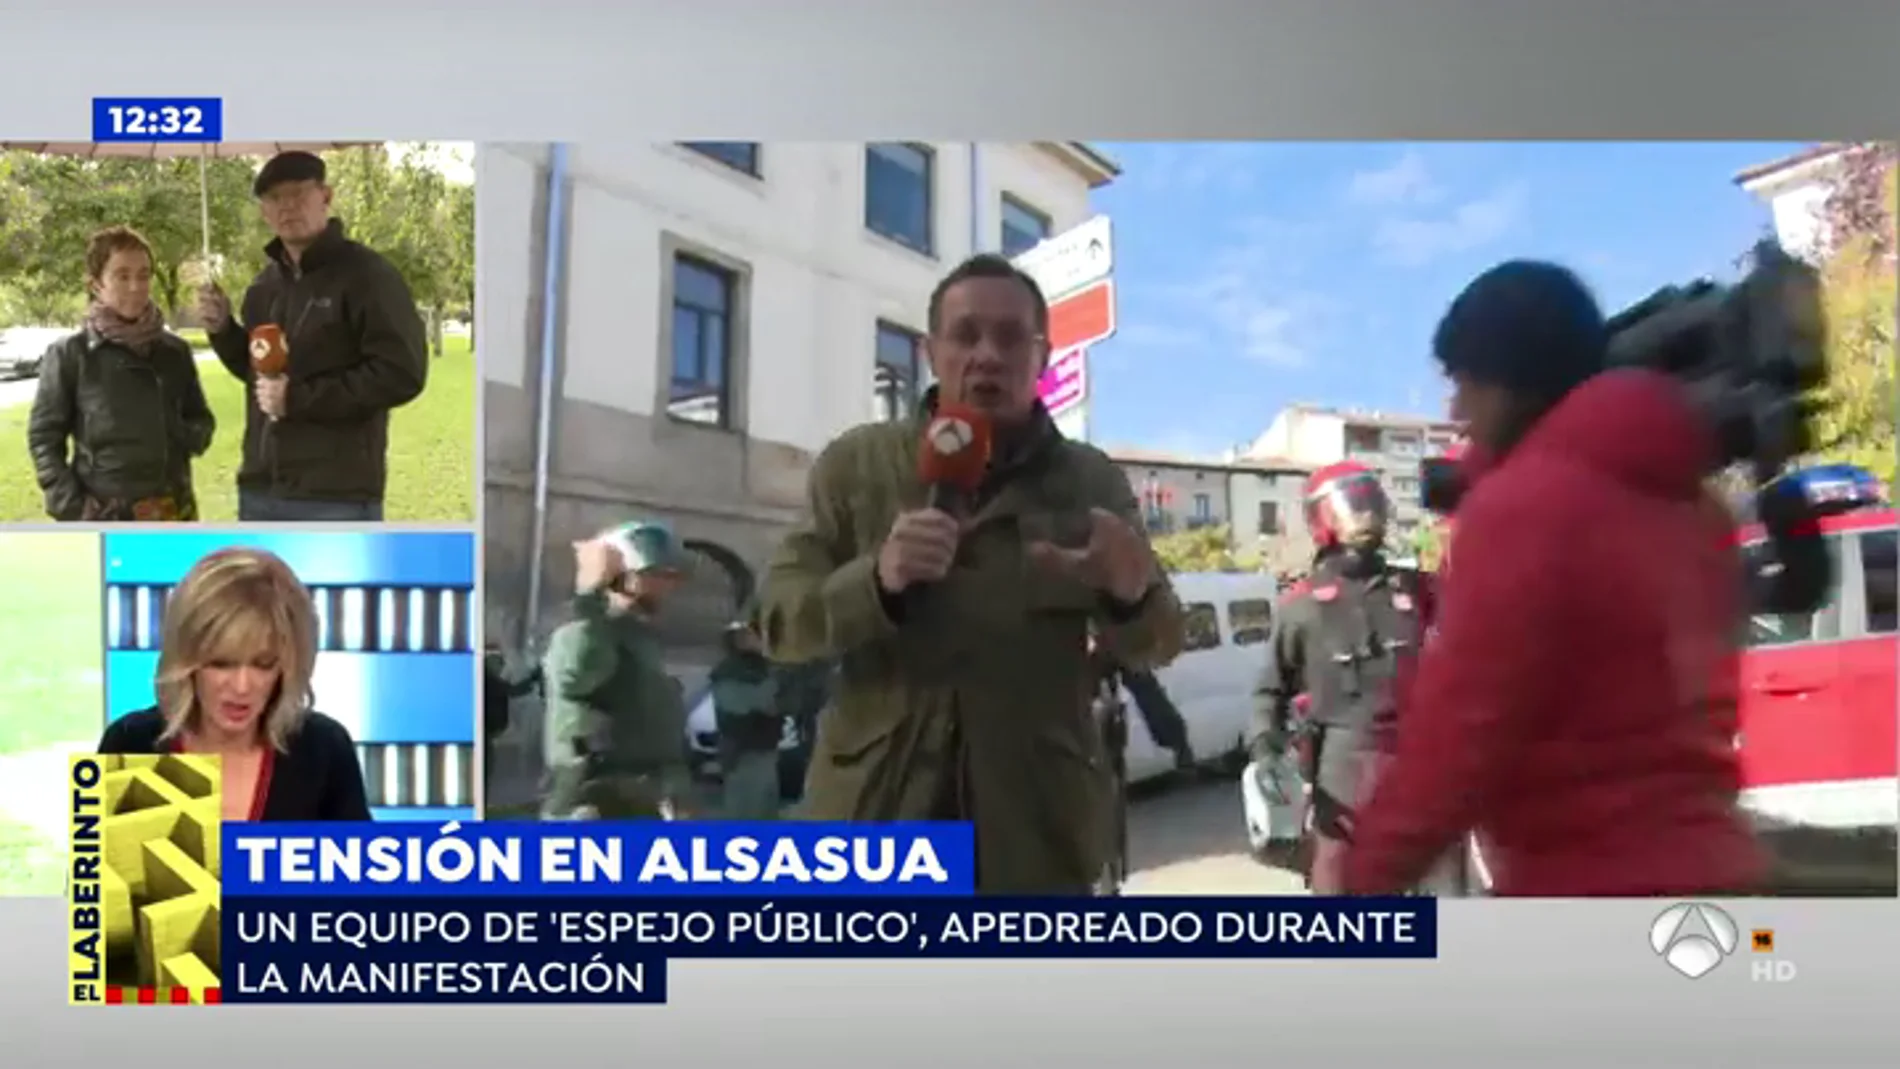 Un equipo de 'Espejo Público', apedreado en la manifestación de Alsasua: "Los profesionales de la provocación son los que buscaban violencia"